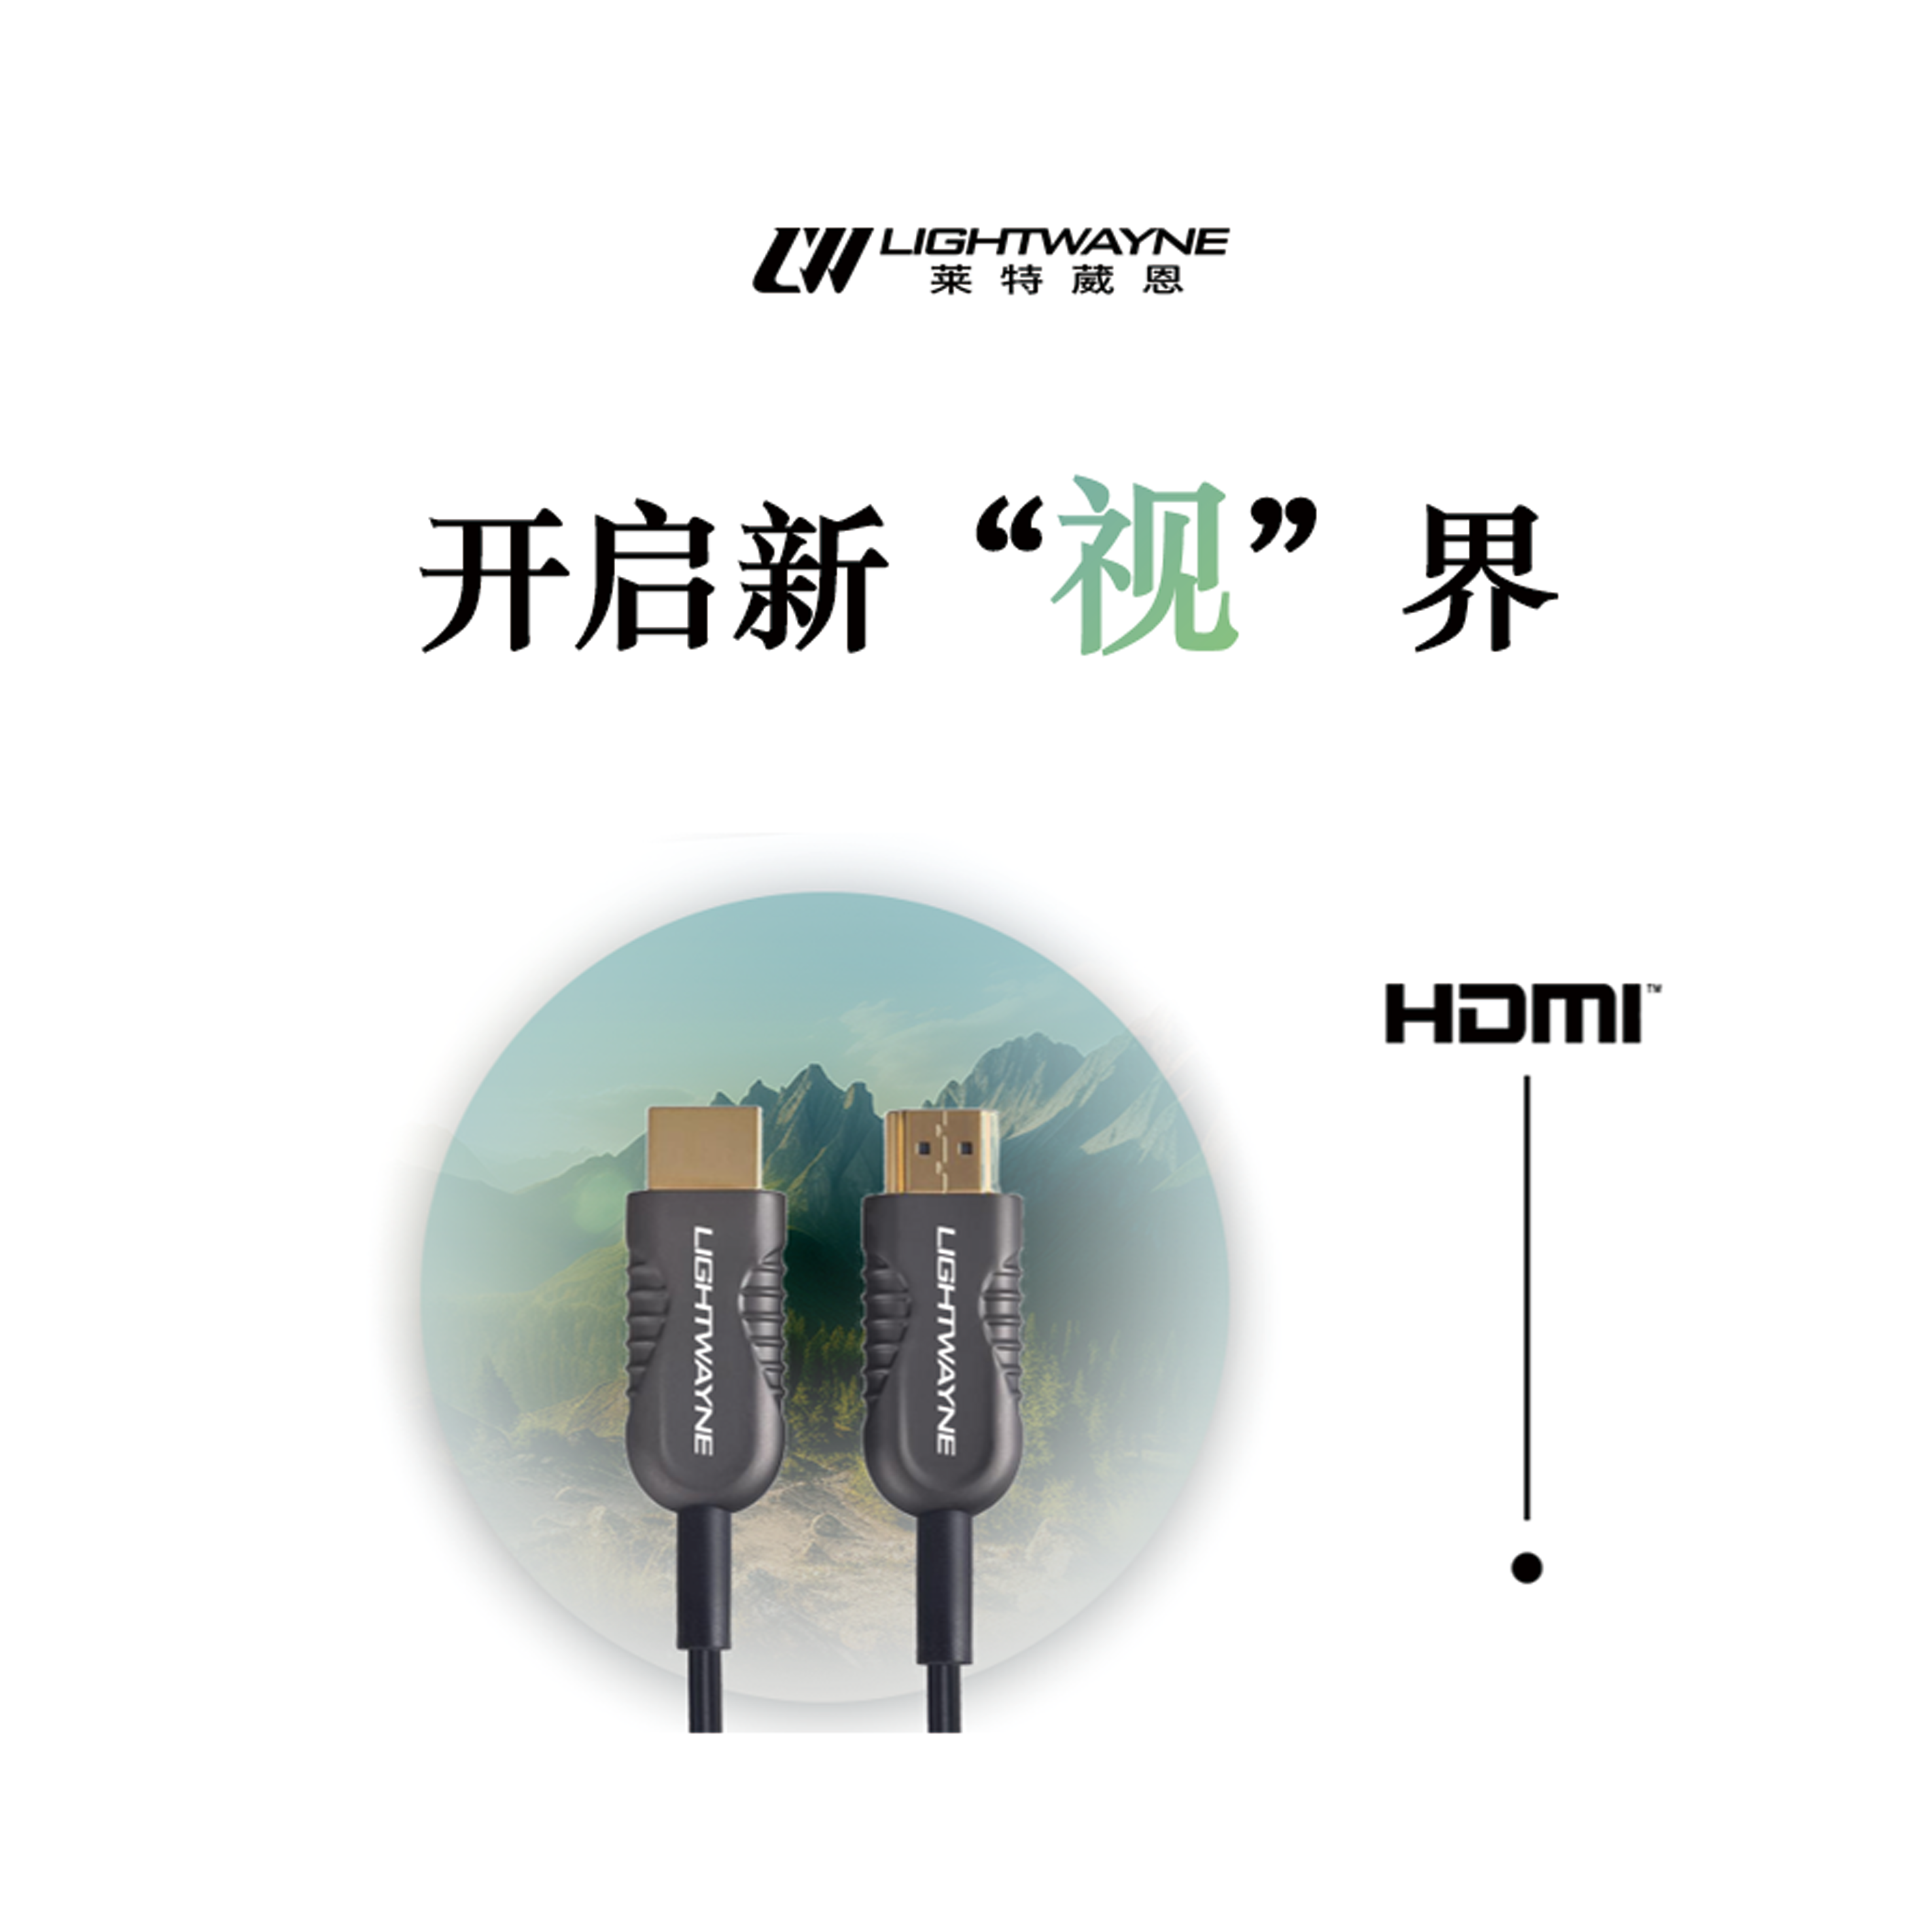 【产品速递】产品介绍 | HDMI AOC线缆